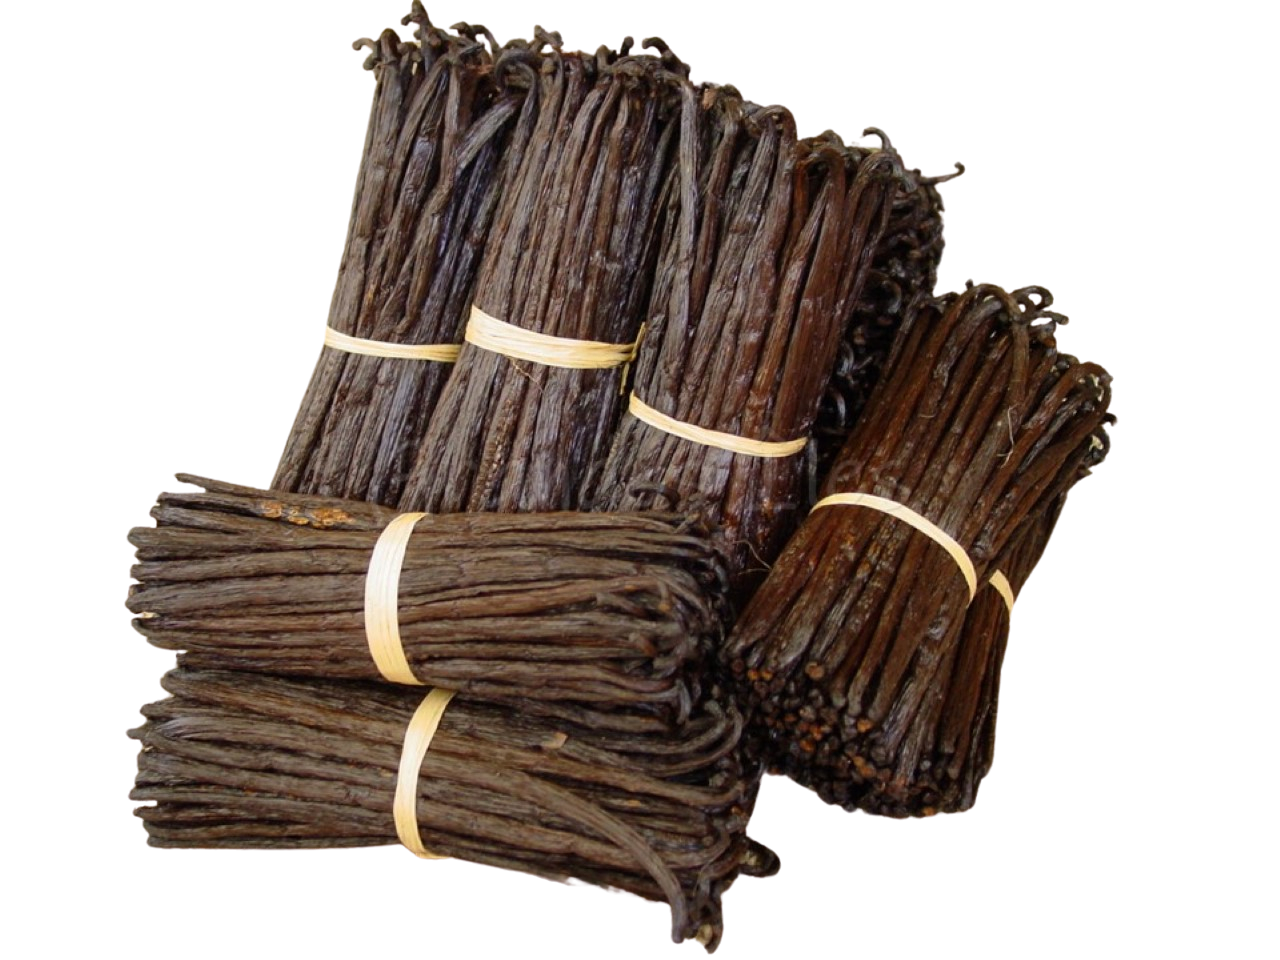 100g de gousses de Vanille Bourbon qualité Gourmet de Madagascar